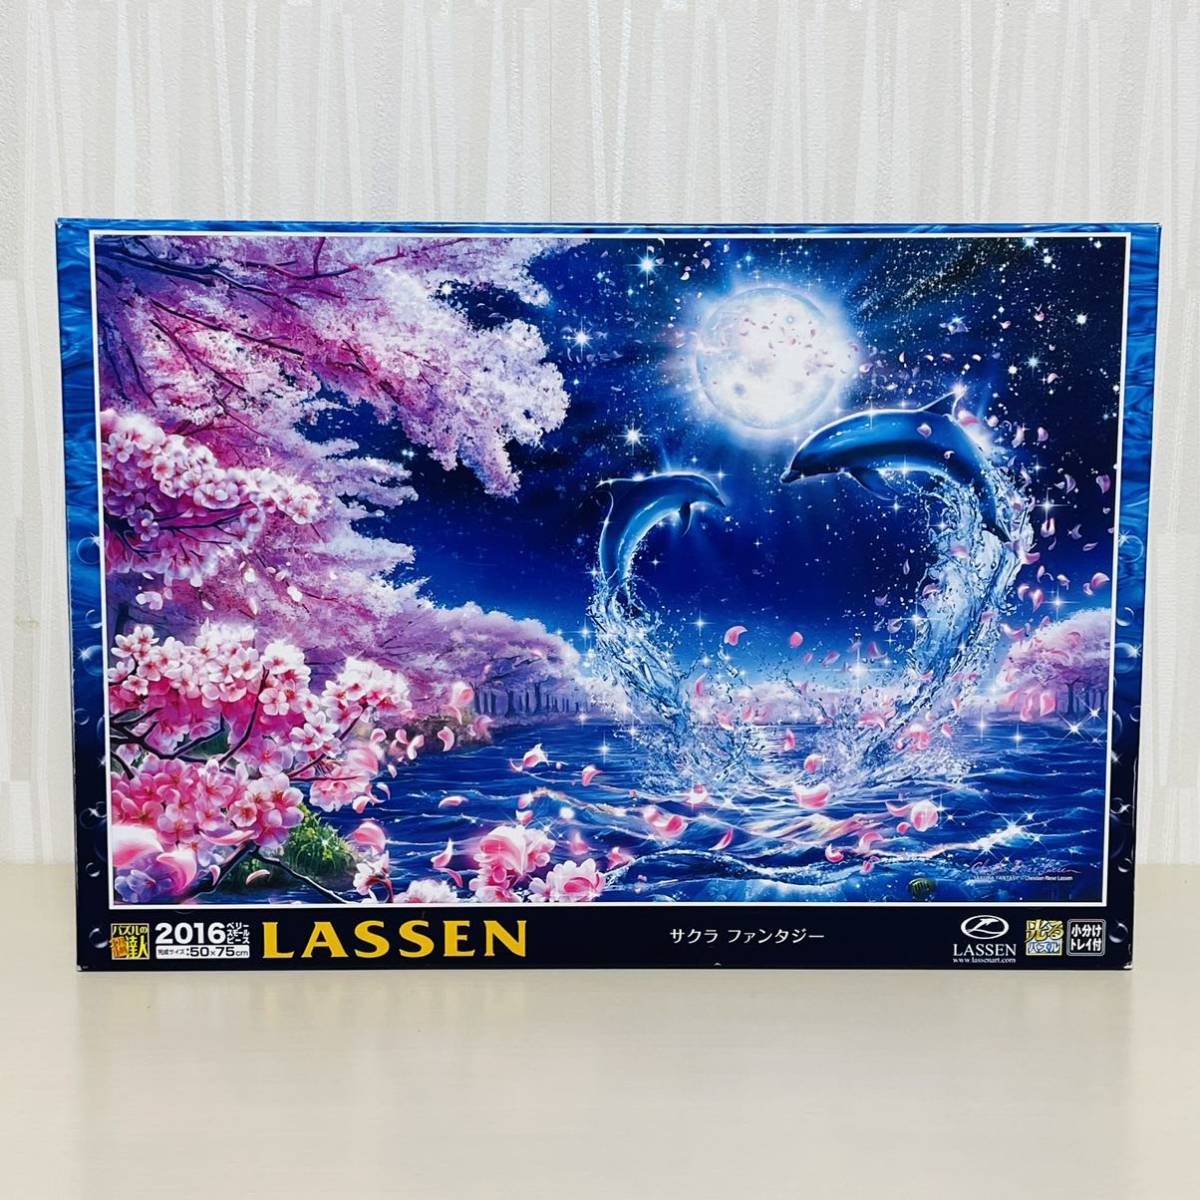 Sac intérieur non ouvert Puzzle Master Jigsaw Puzzle Lassen 2016 Piece Glowing Puzzle Sakura Fantasy Epoch Co., Ltd., jouet, jeu, puzzle, puzzle